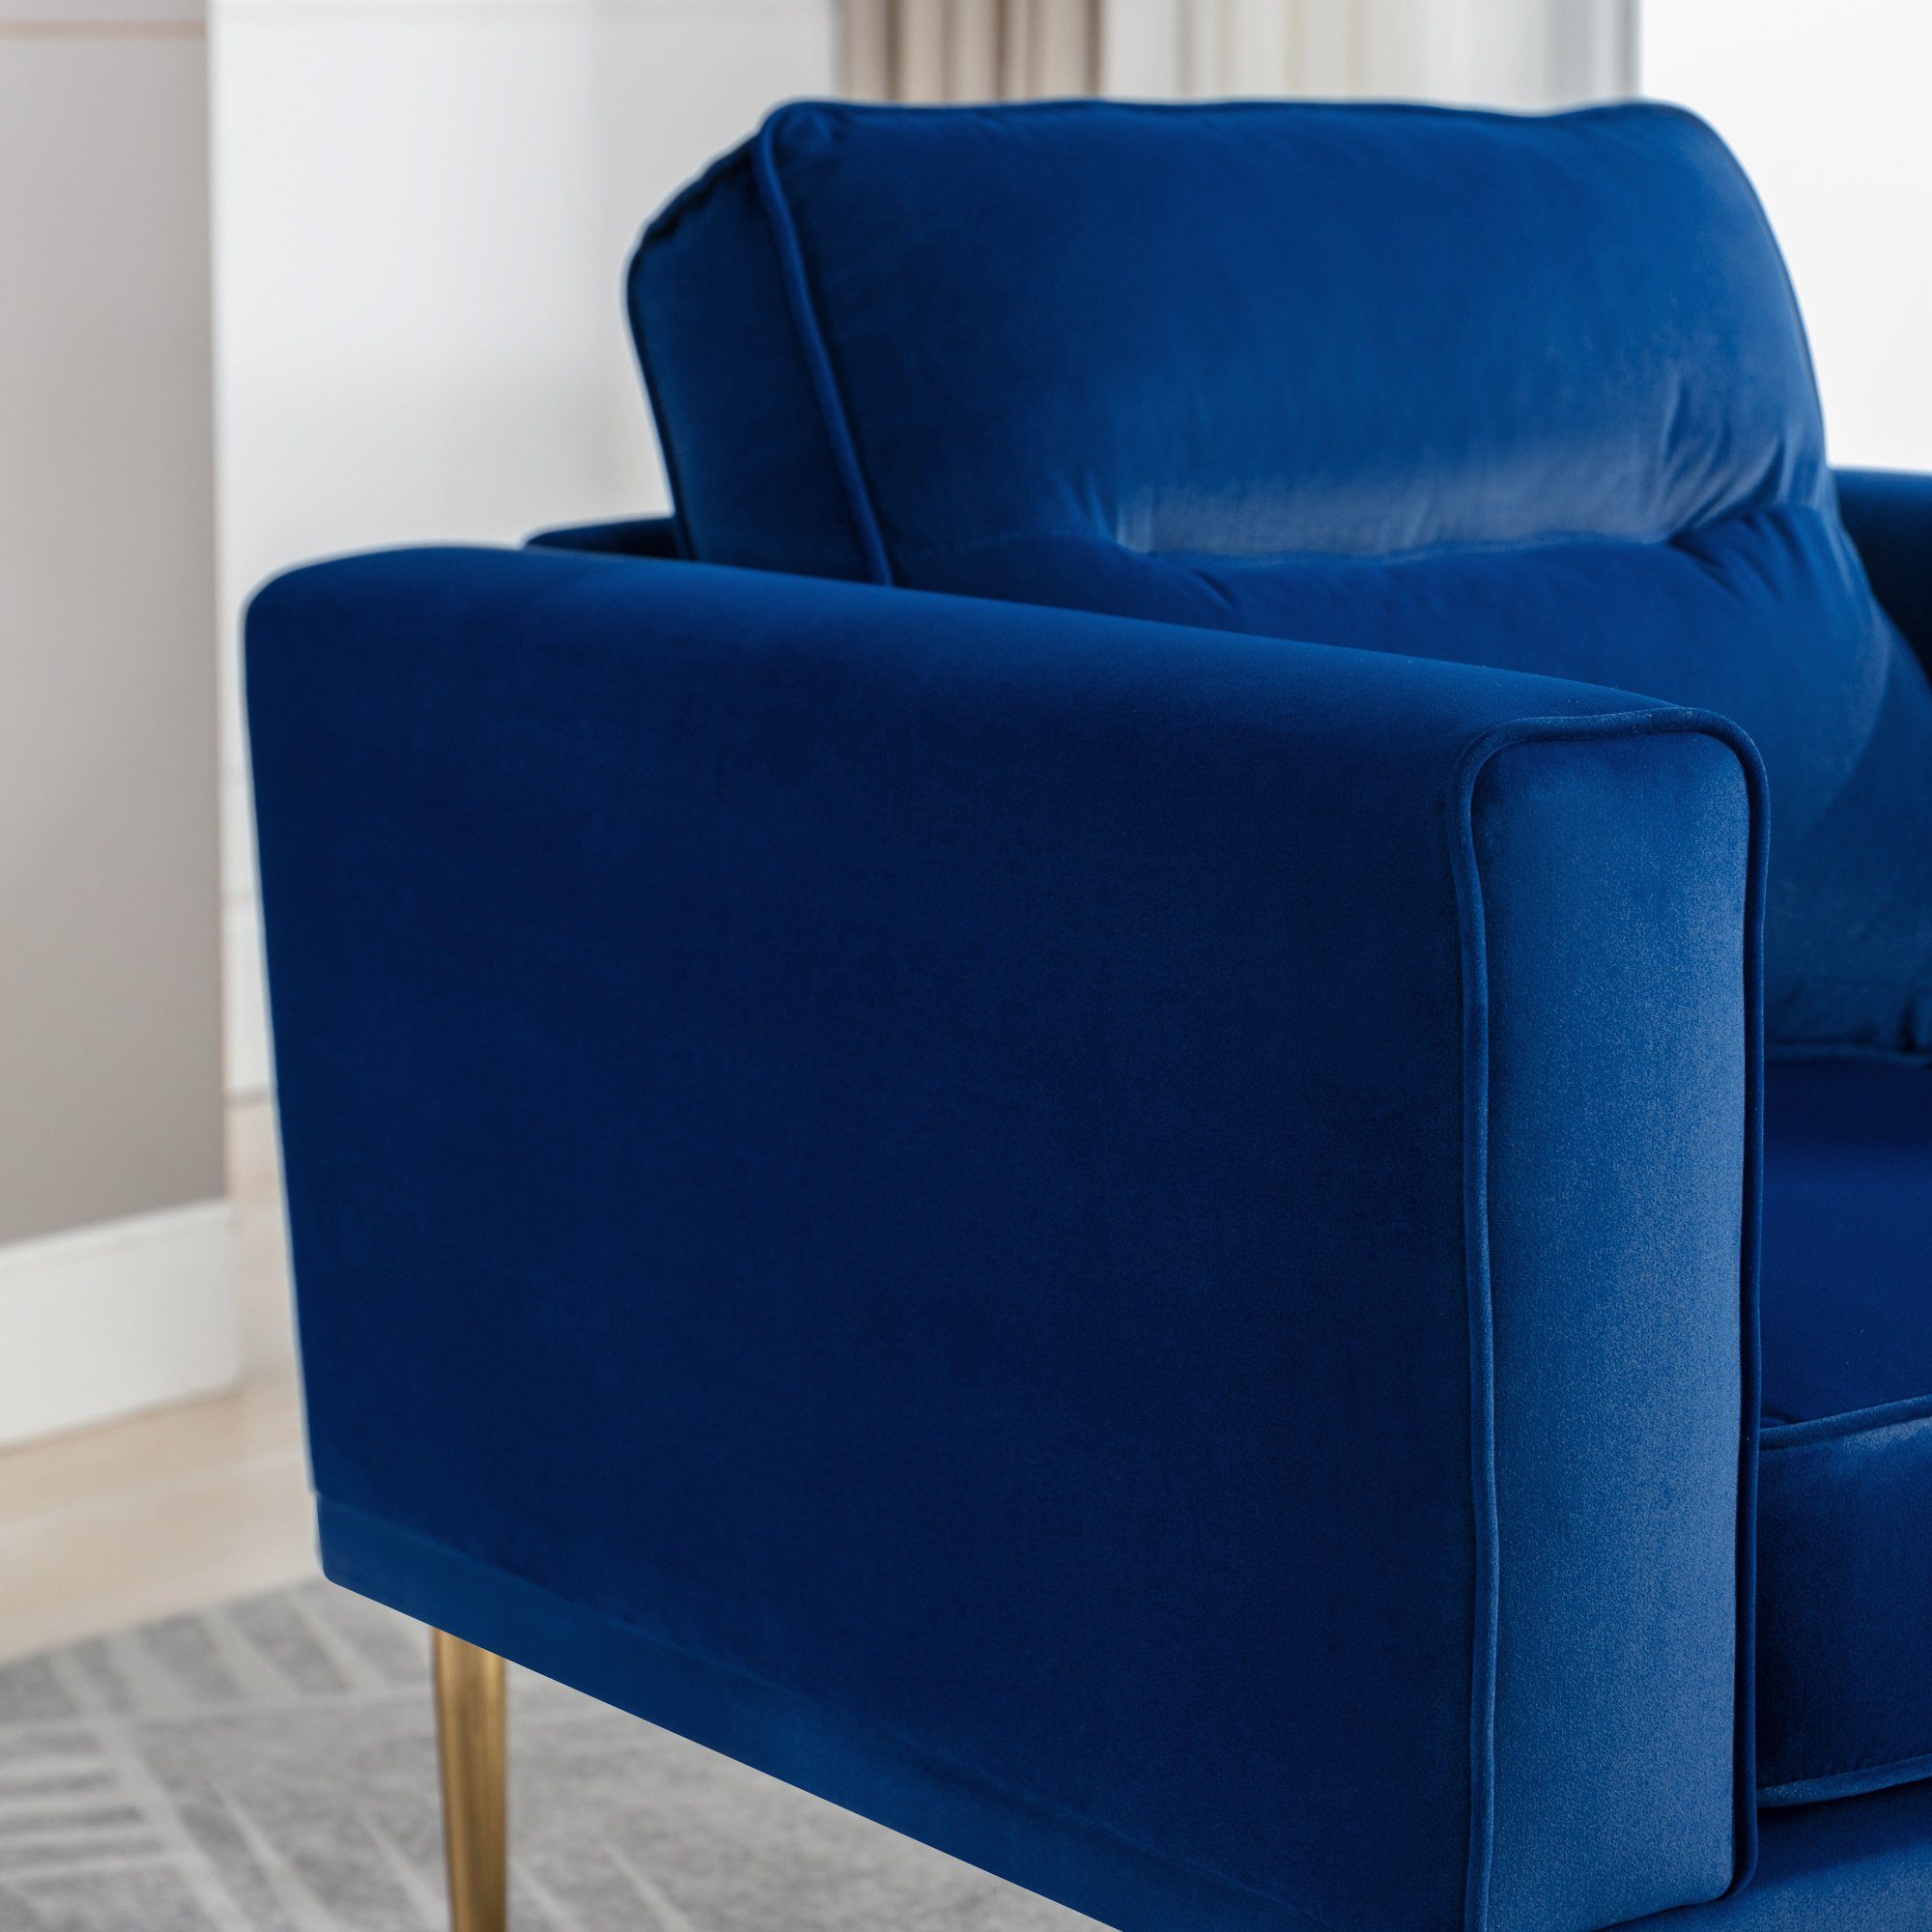 mit Sitzkissen und Sessel Fernsehsessel, Loungesessel, blau OKWISH Roségold-Metallbeine, Samtstuhl moderner Sessel), einfacher Polster Sessel (lässiger